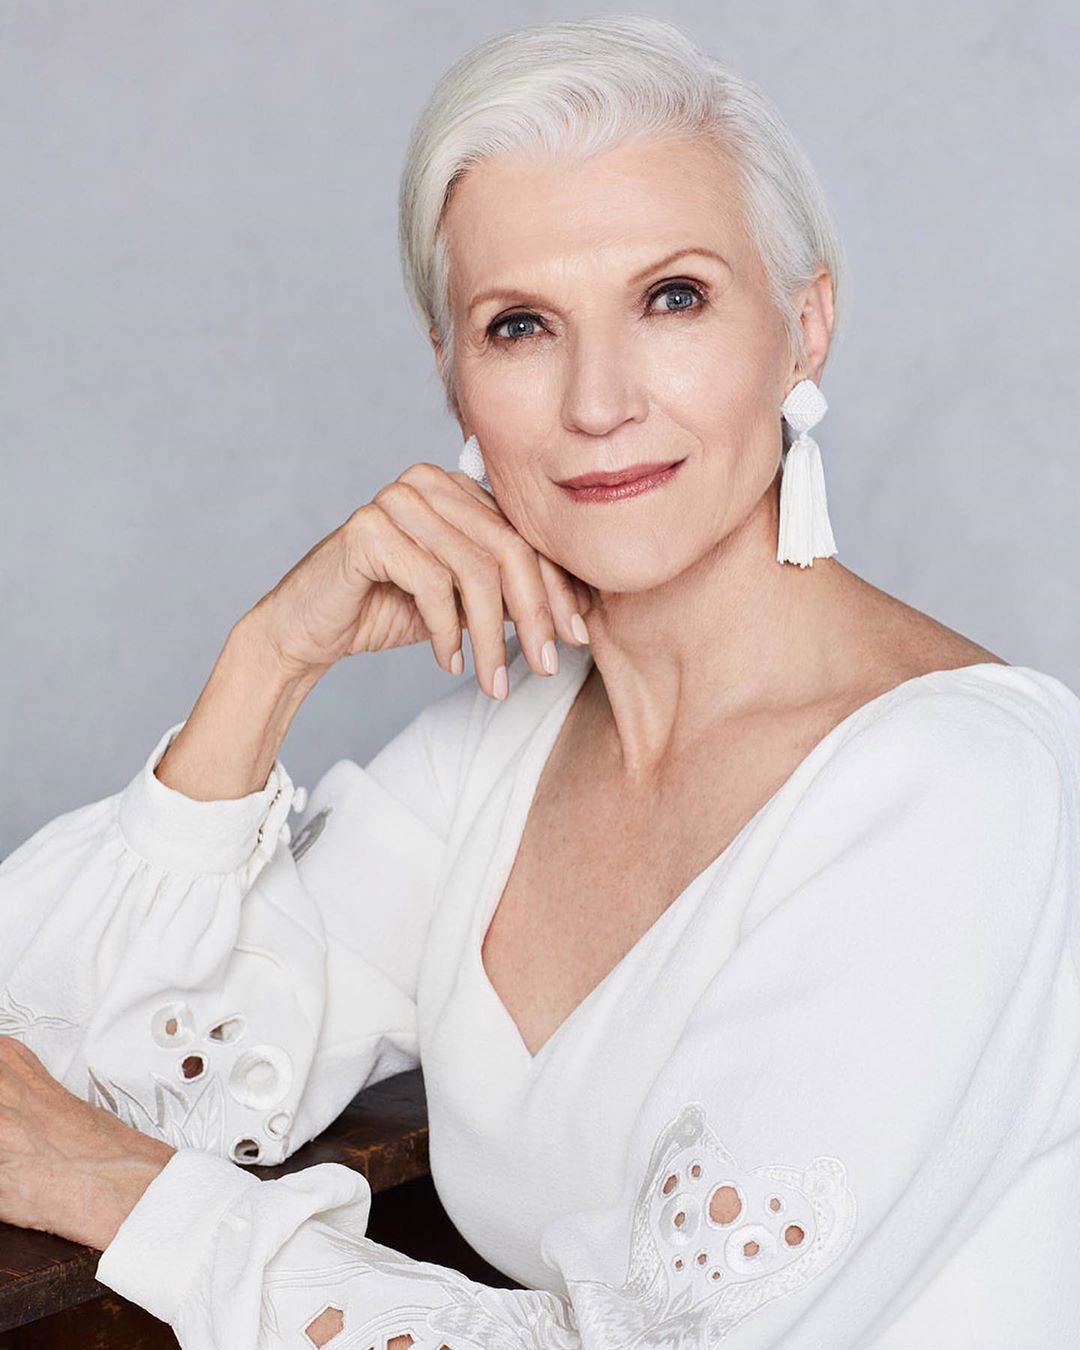 Meyer năm nay 74 tuổi nhưng bà vẫn đang bước vào thời kỳ huy hoàng nhất trong sự nghiệp người mẫu.